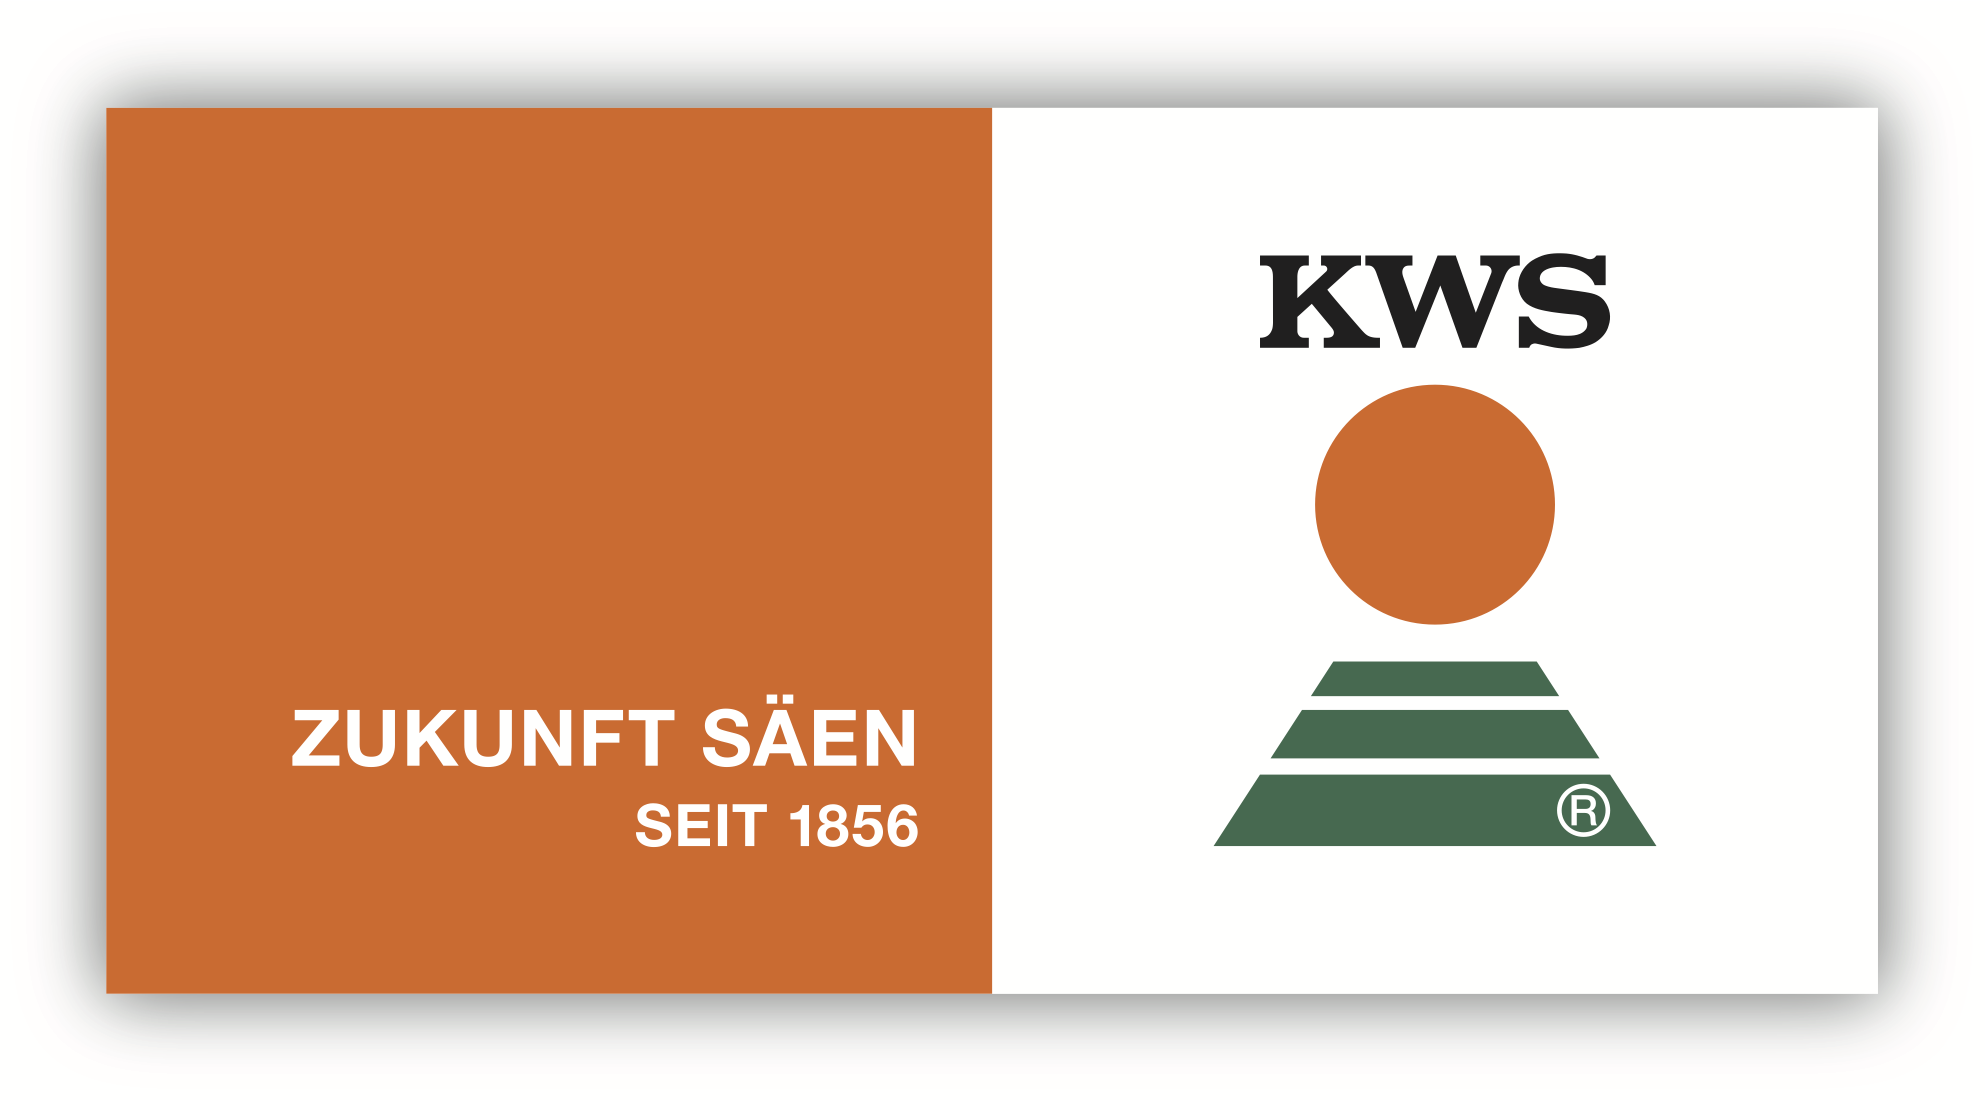 kws_logo_mit_claim_deutsch_2.png